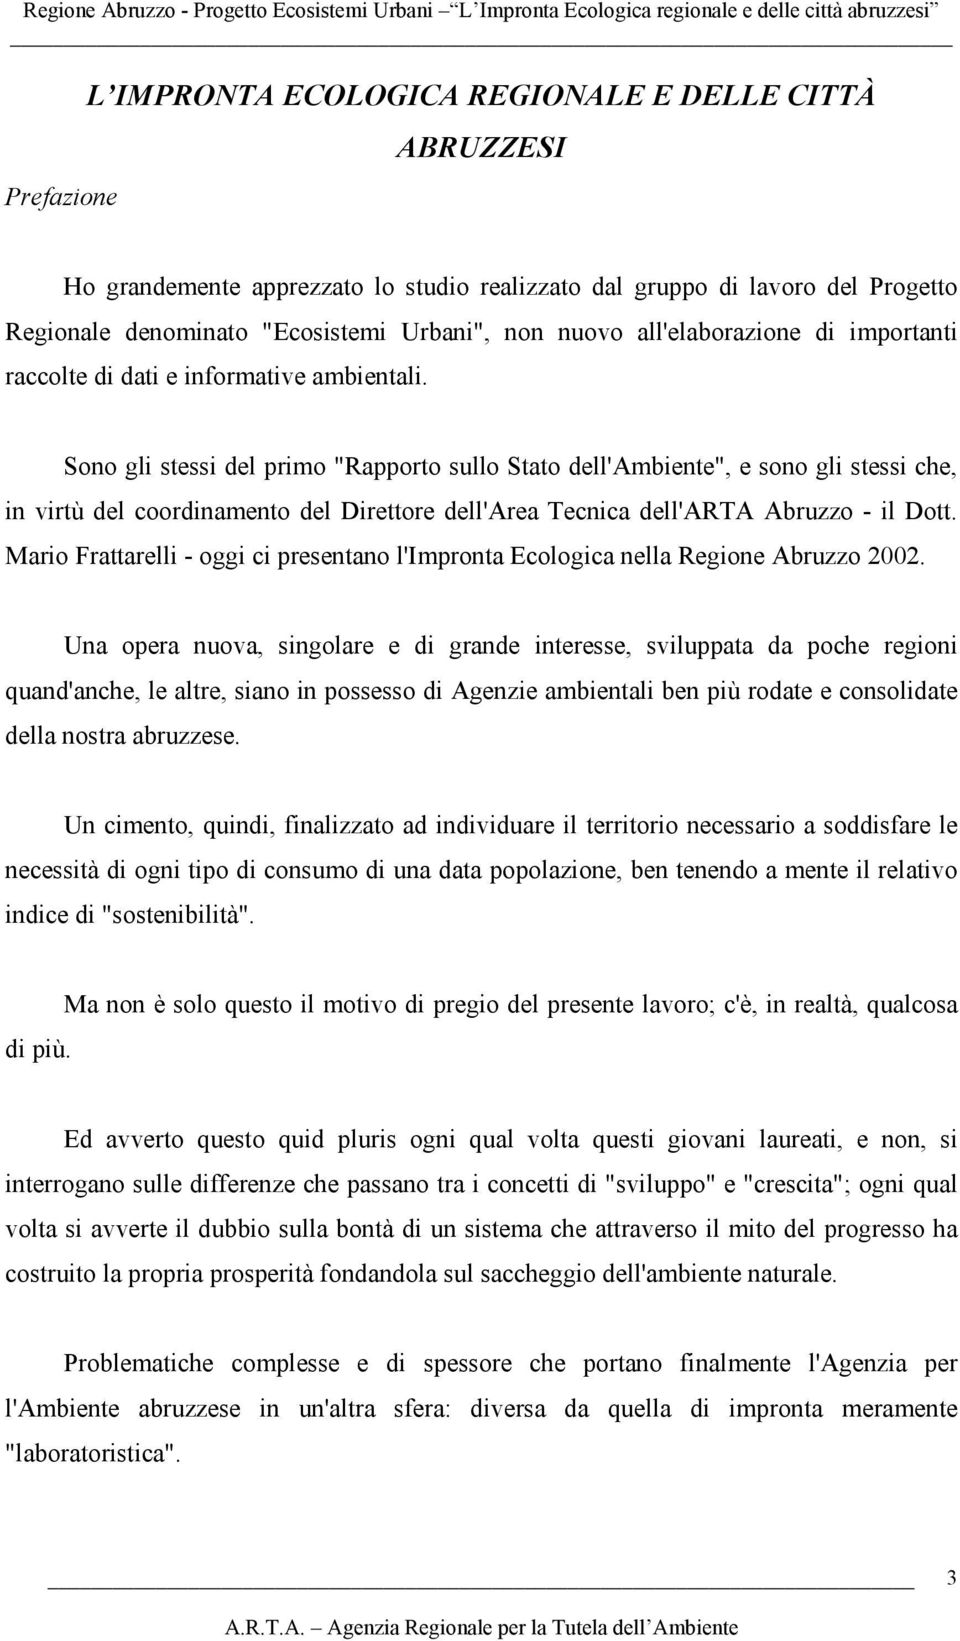 Sono gli stessi del primo "Rapporto sullo Stato dell'ambiente", e sono gli stessi che, in virtù del coordinamento del Direttore dell'area Tecnica dell'arta Abruzzo - il Dott.